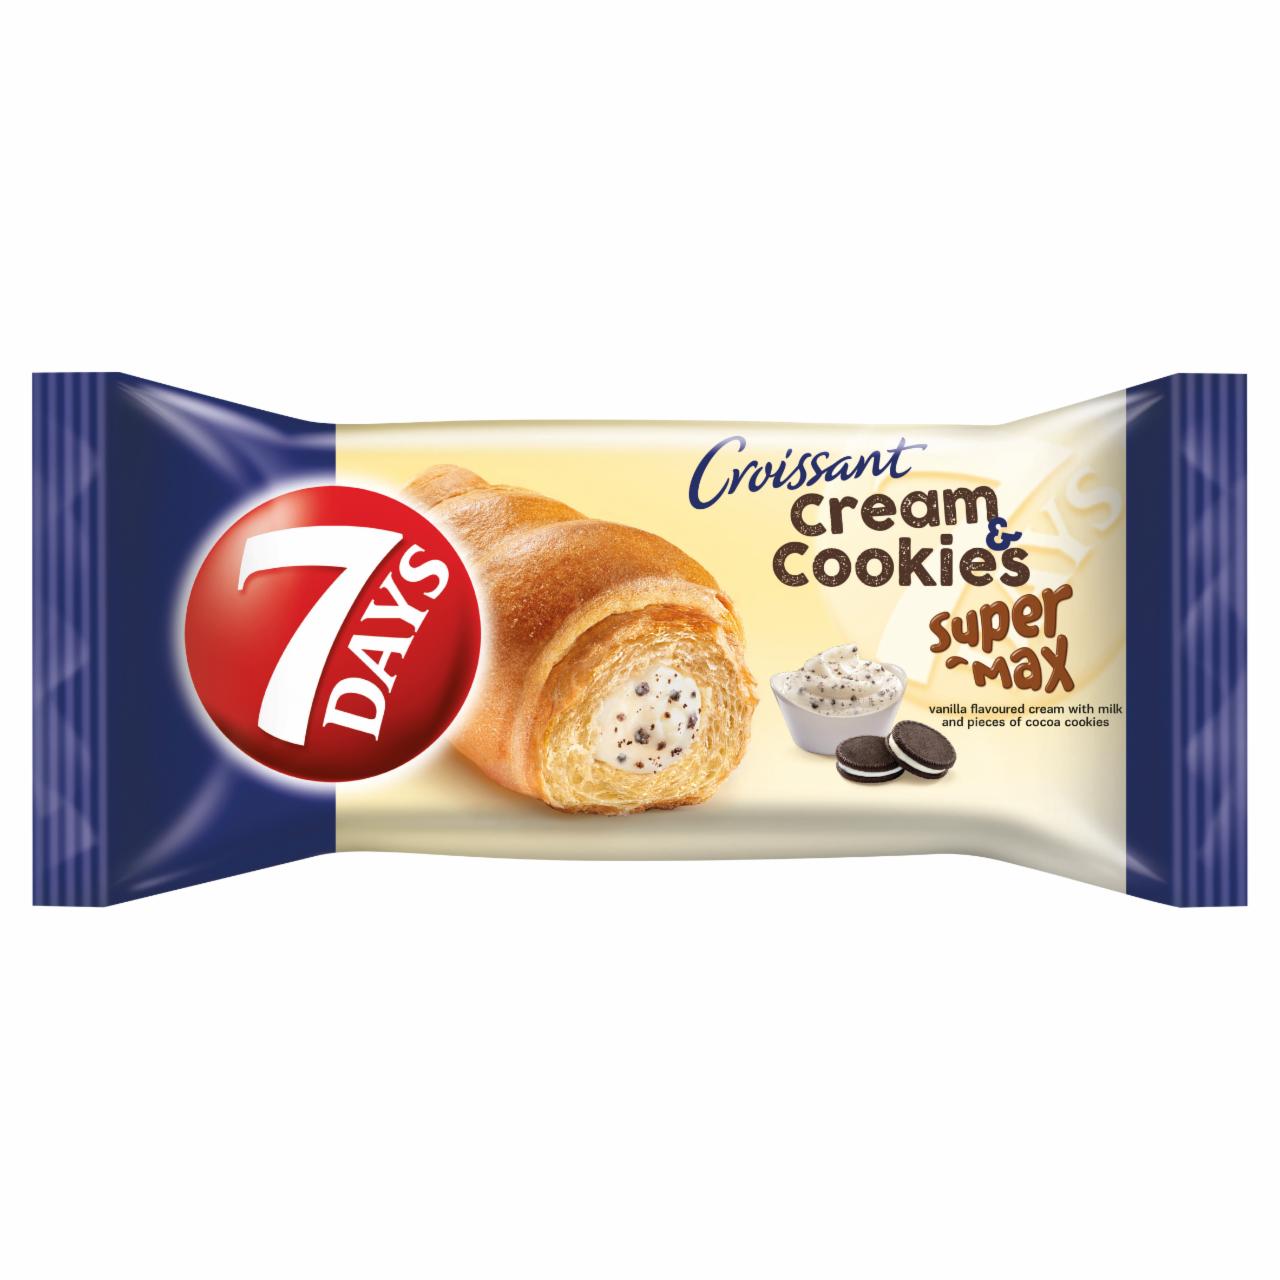 Képek - 7DAYS Cream & Cookies Super Max vanília ízű krémmel töltött croissant kakaós keksz darabokkal 110 g